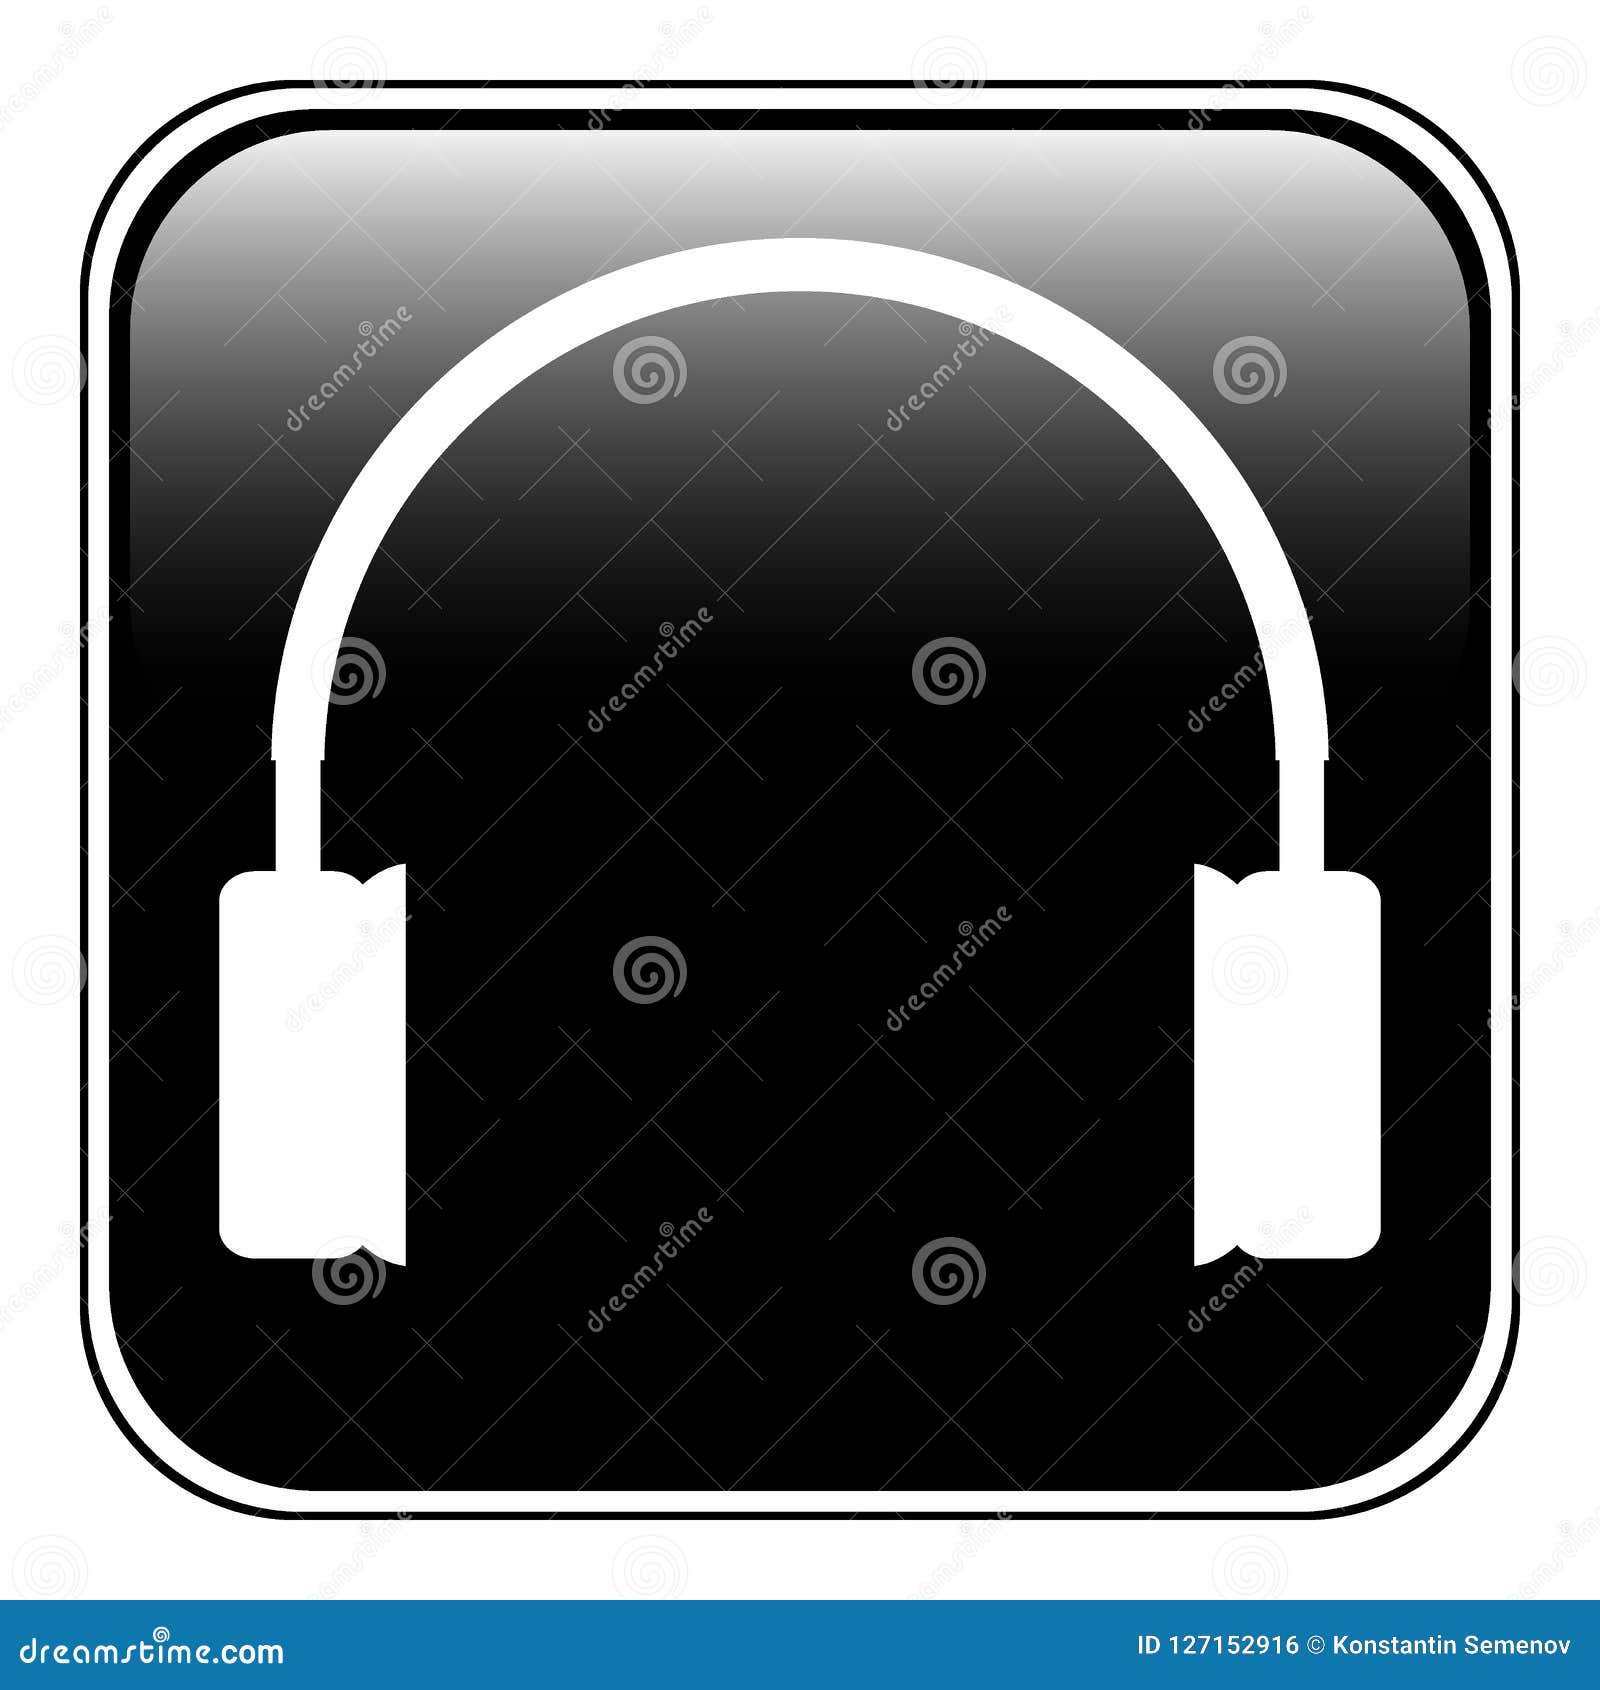 headphones icon on black.